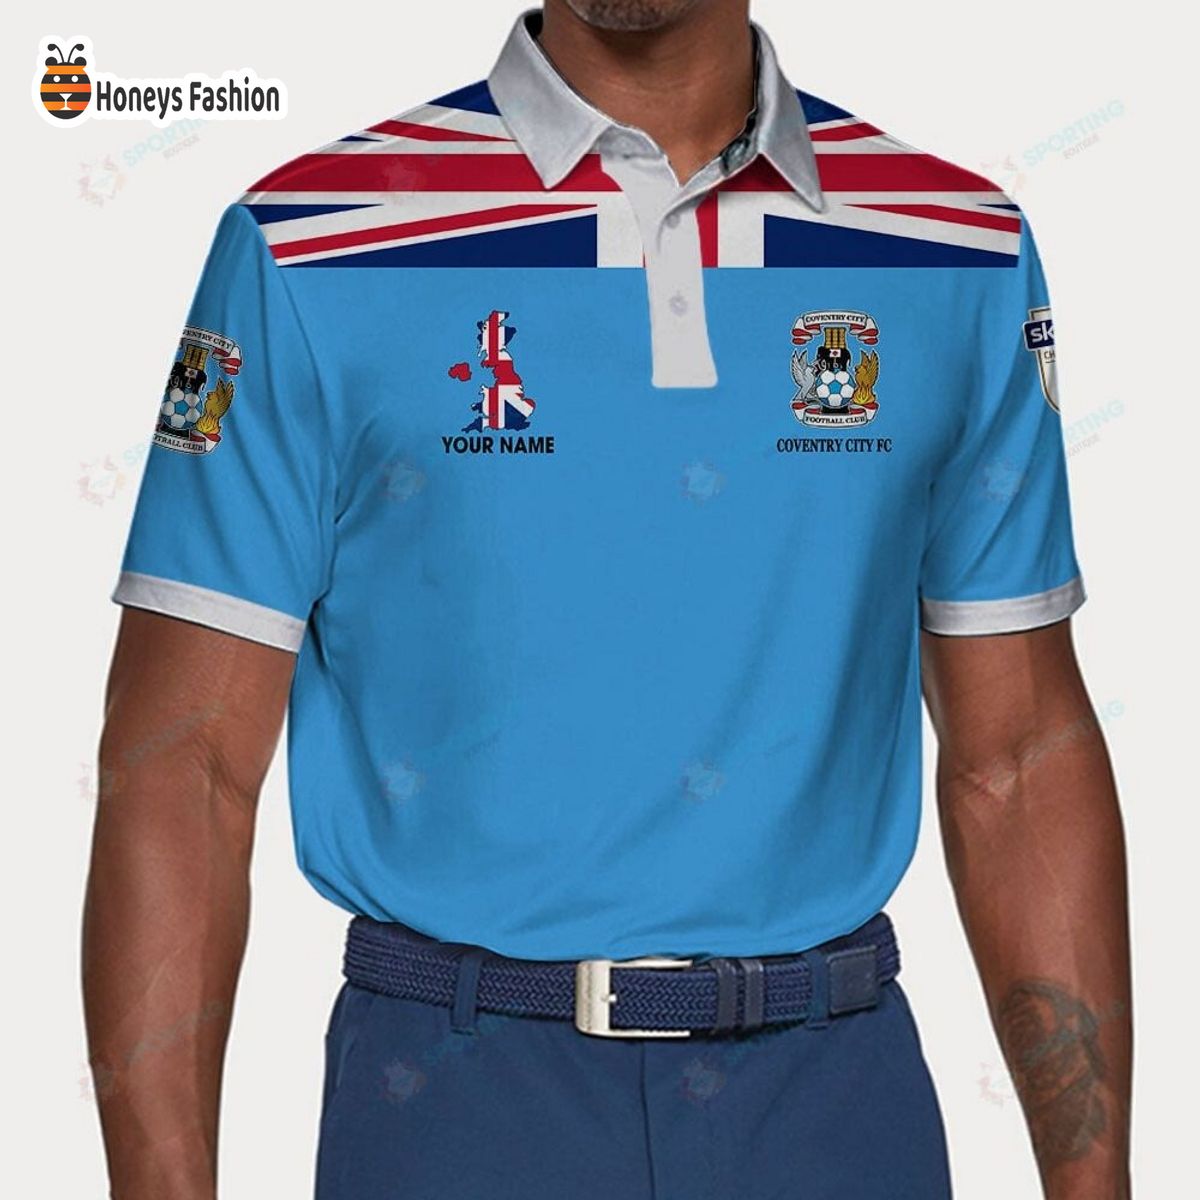 Coventry City F.C custom name polo shirt